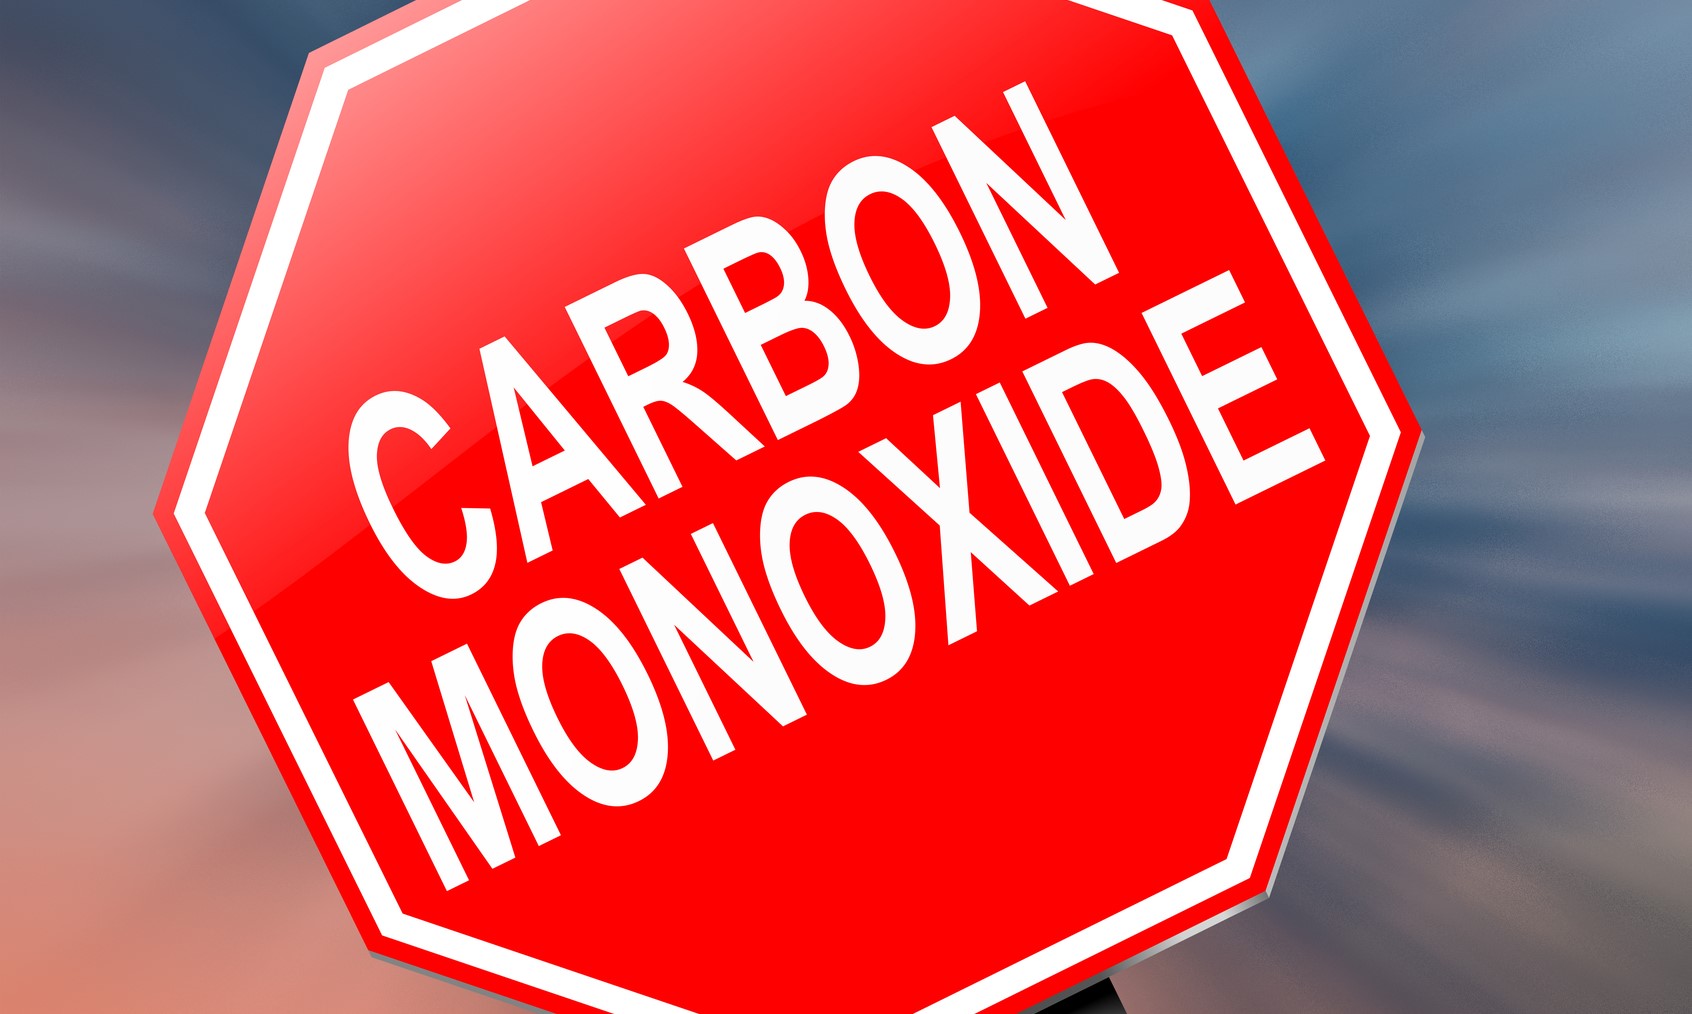 CARBON MONOXIDE – A HIDDEN DANGER